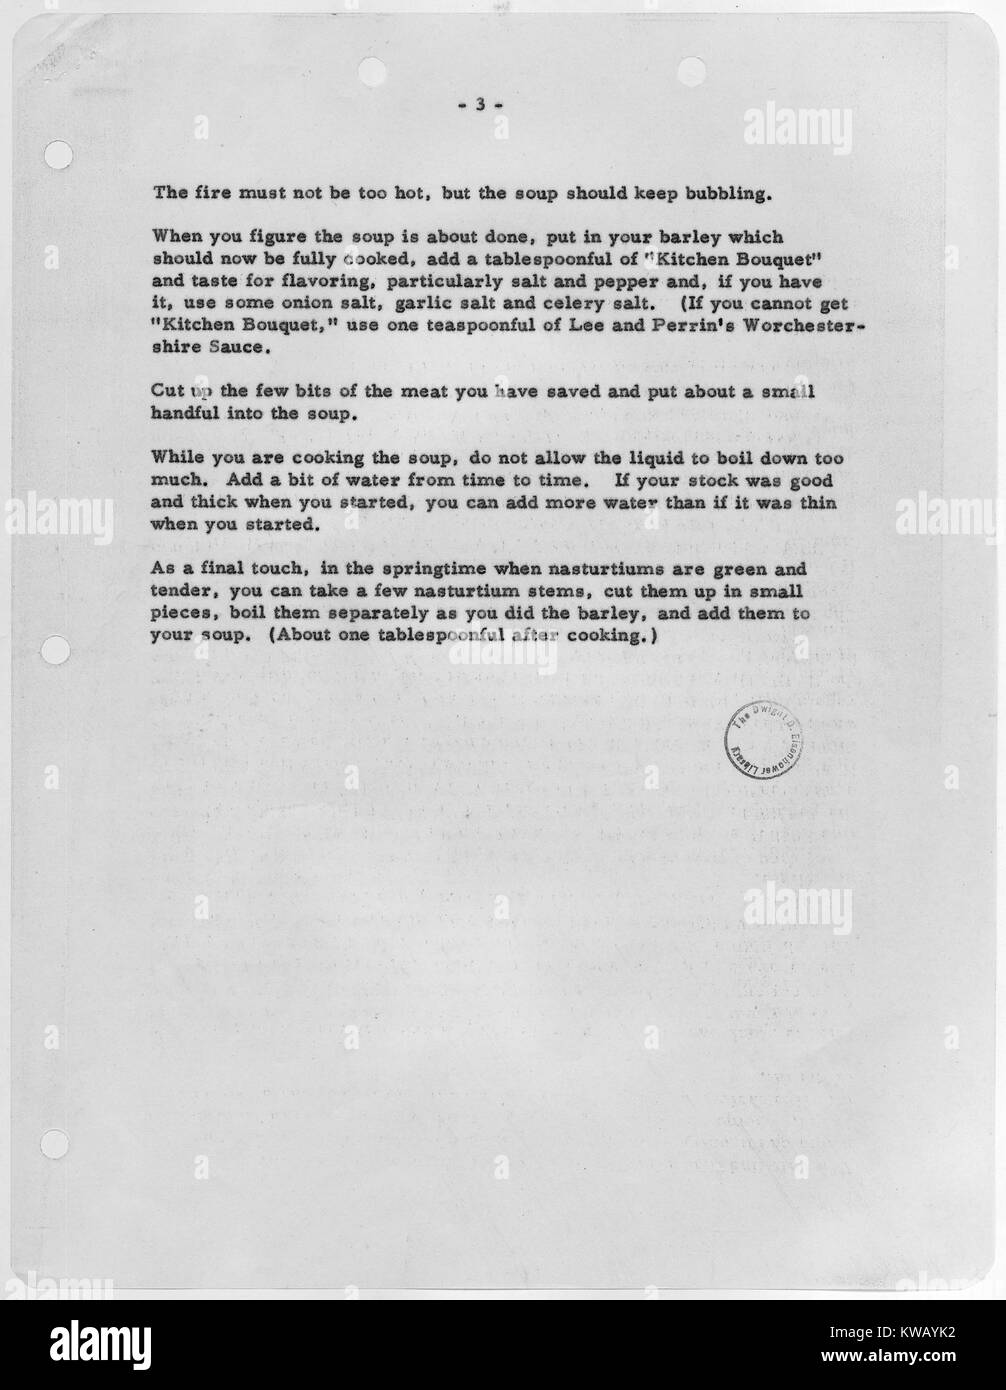 Präsident Eisenhower's Rezept für gemüsesuppe wie in der Marion Sentenel, 1953 veröffentlicht. Stockfoto